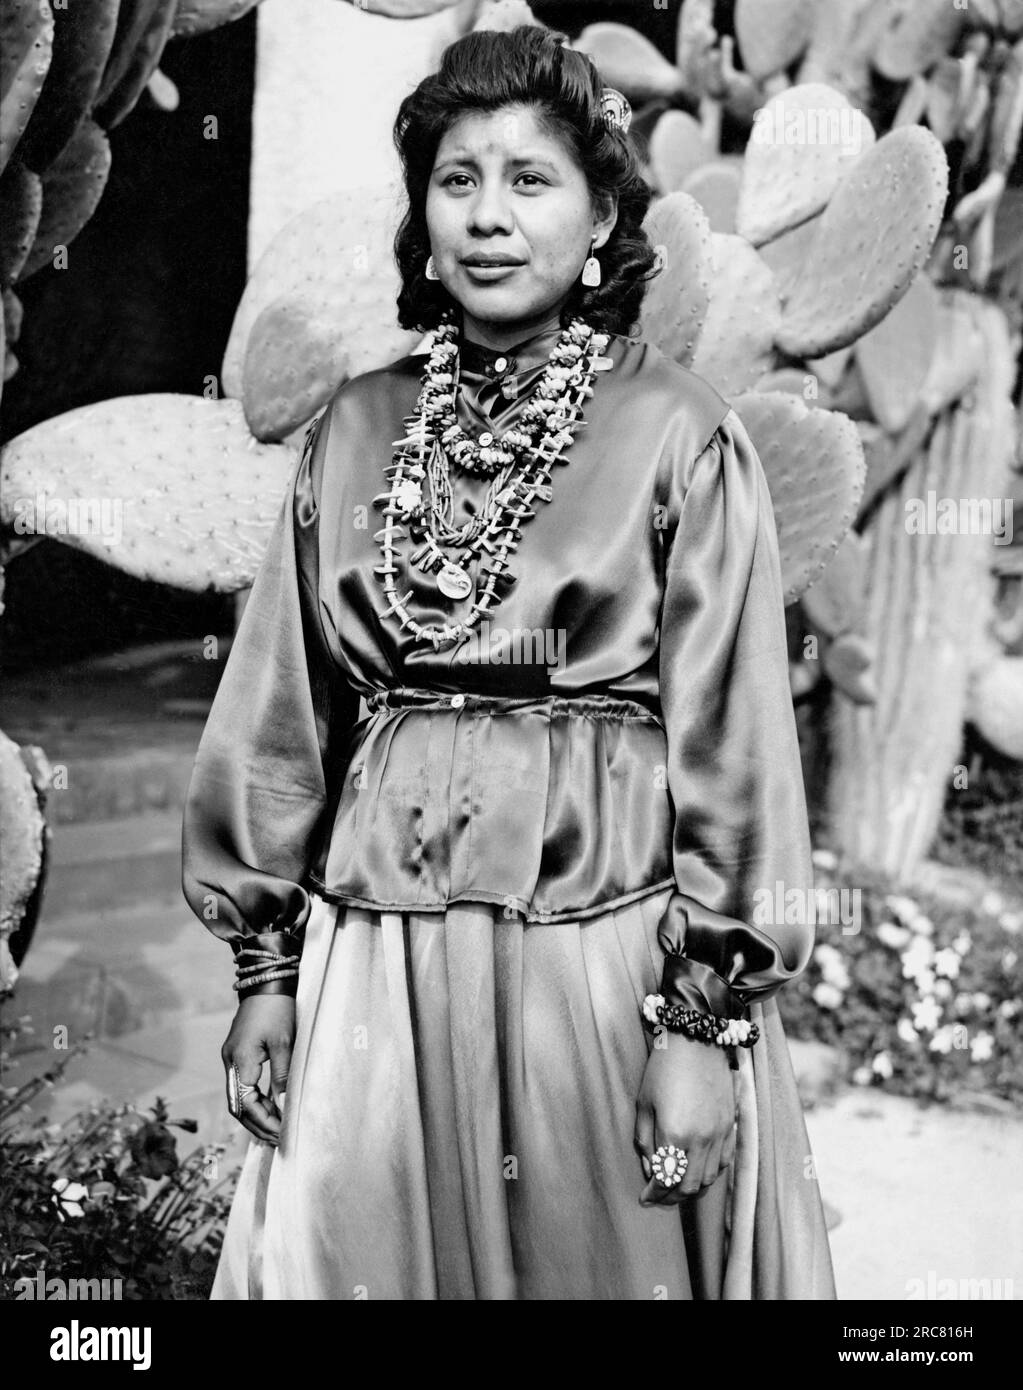 Tucson, Arizona: 1941 Susanne Ignacio, eine Papago-Ureinwohnerin. Wurde aus 17 anderen Jungfrauen zur Königin des jährlichen Powwow gewählt, an dem 4000 Stammesangehörige teilnahmen. Sie ist eine erfahrene Reiterin und unterrichtet ihre Muttersprache an der University of Arizona. Stockfoto